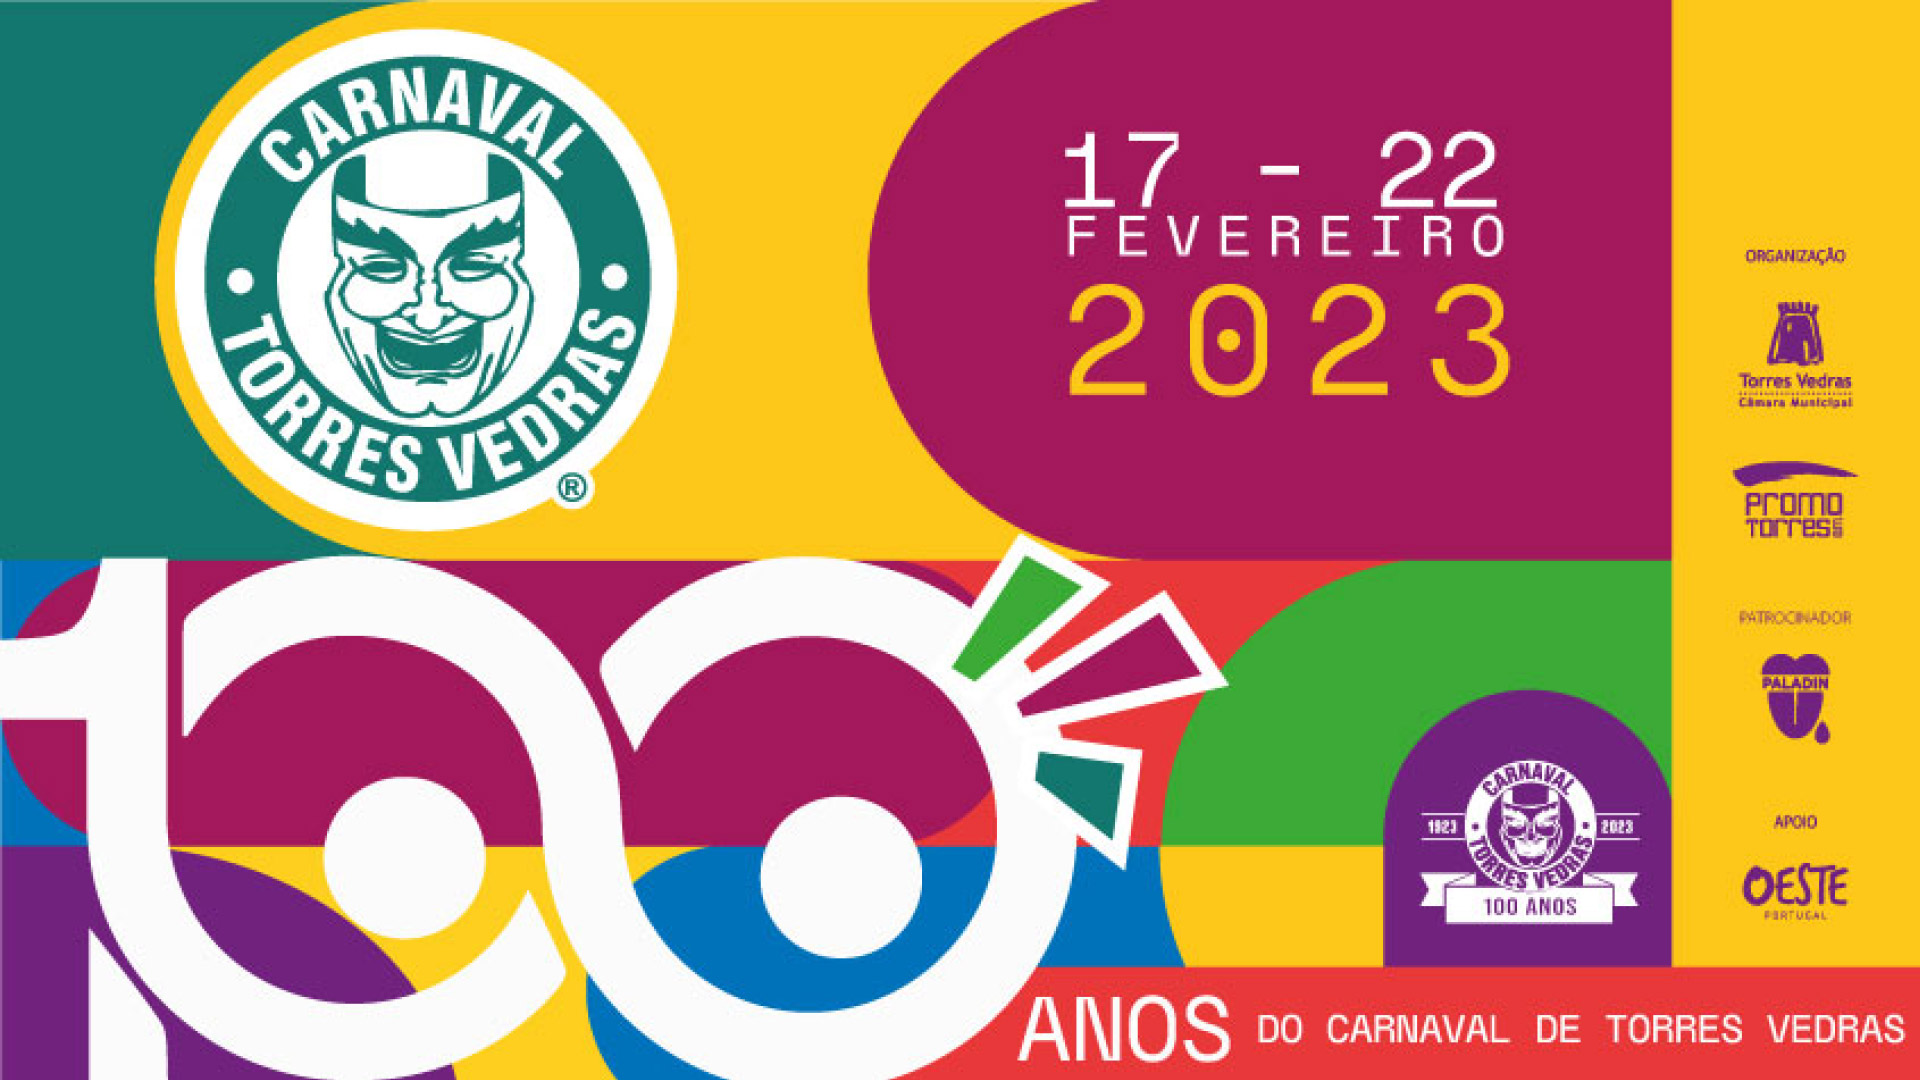 Carnaval de Torres Vedras em ano de centenário